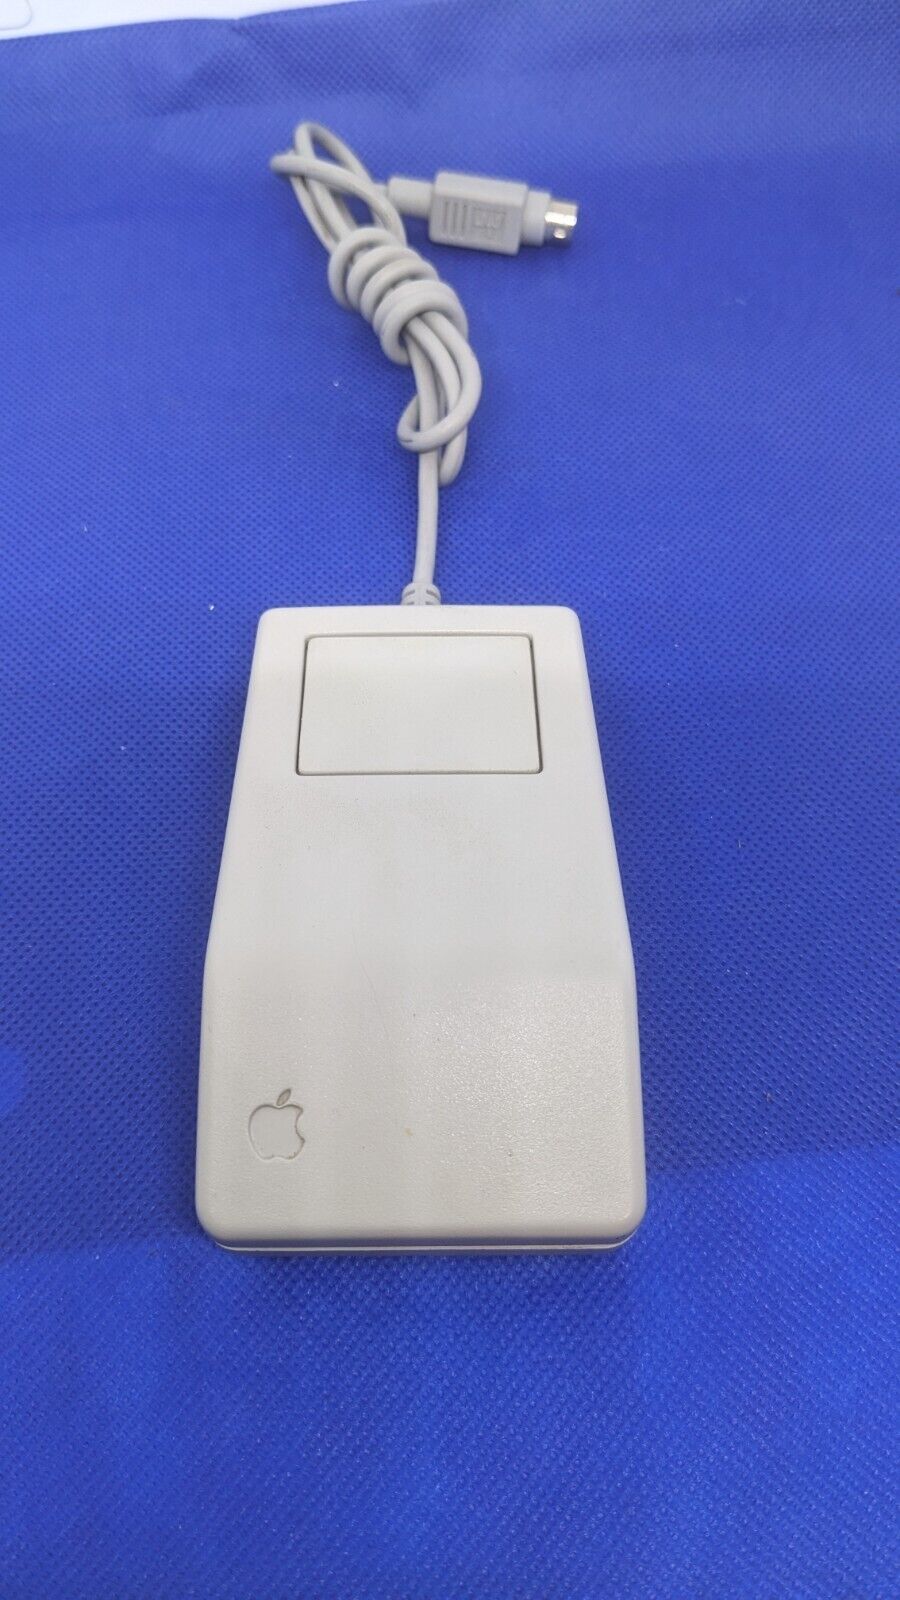 Vintage OEM Apple Desktop Bus Mouse for ADB Mac or IIGS G5431 A9M0331